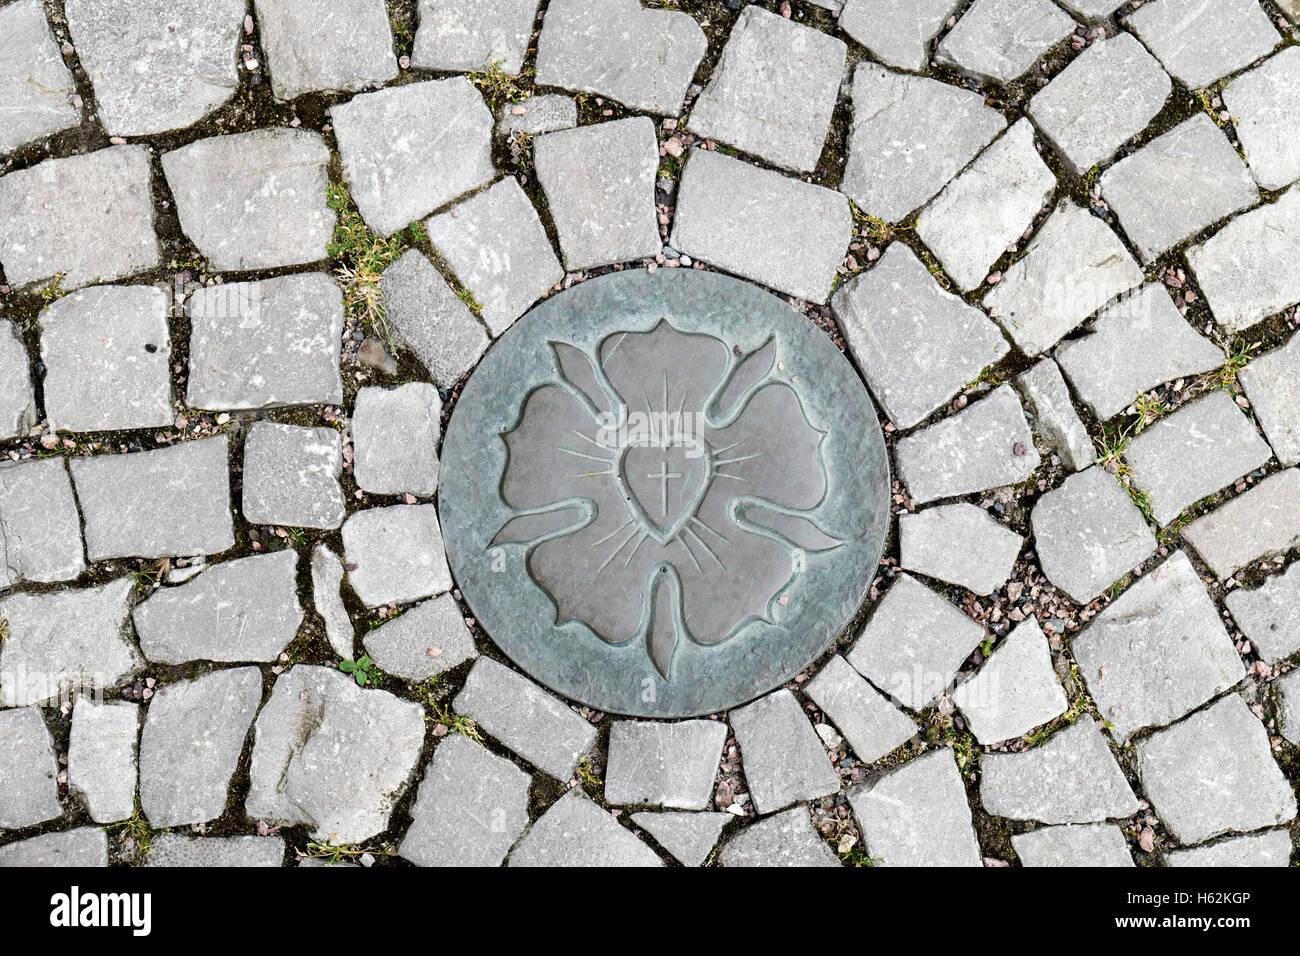 Eine Luther-rose ist auf dem Bürgersteig von Eisleben, Deutschland, 20. Juni 2016 ersichtlich. Die Luther-rose ist das Symbol der Evnagelical-lutherischen Kirche und das Siegel der Martin-Luther Briefe ab 1530. Foto: Peter Endig Stockfoto